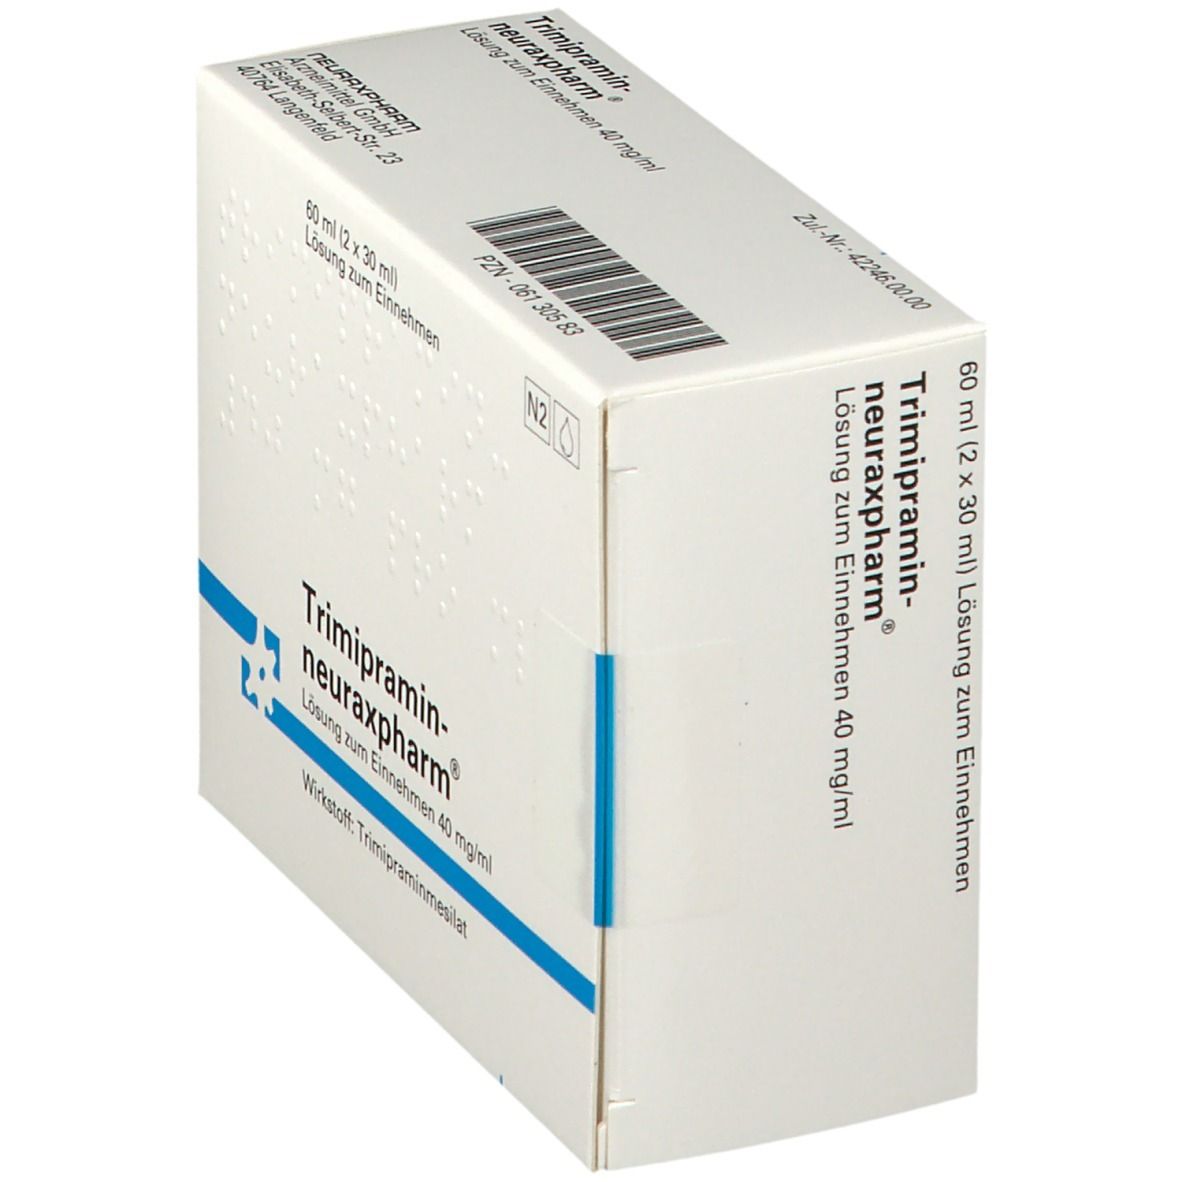 Trimipramin-neuraxpharm® 40 mg/ml